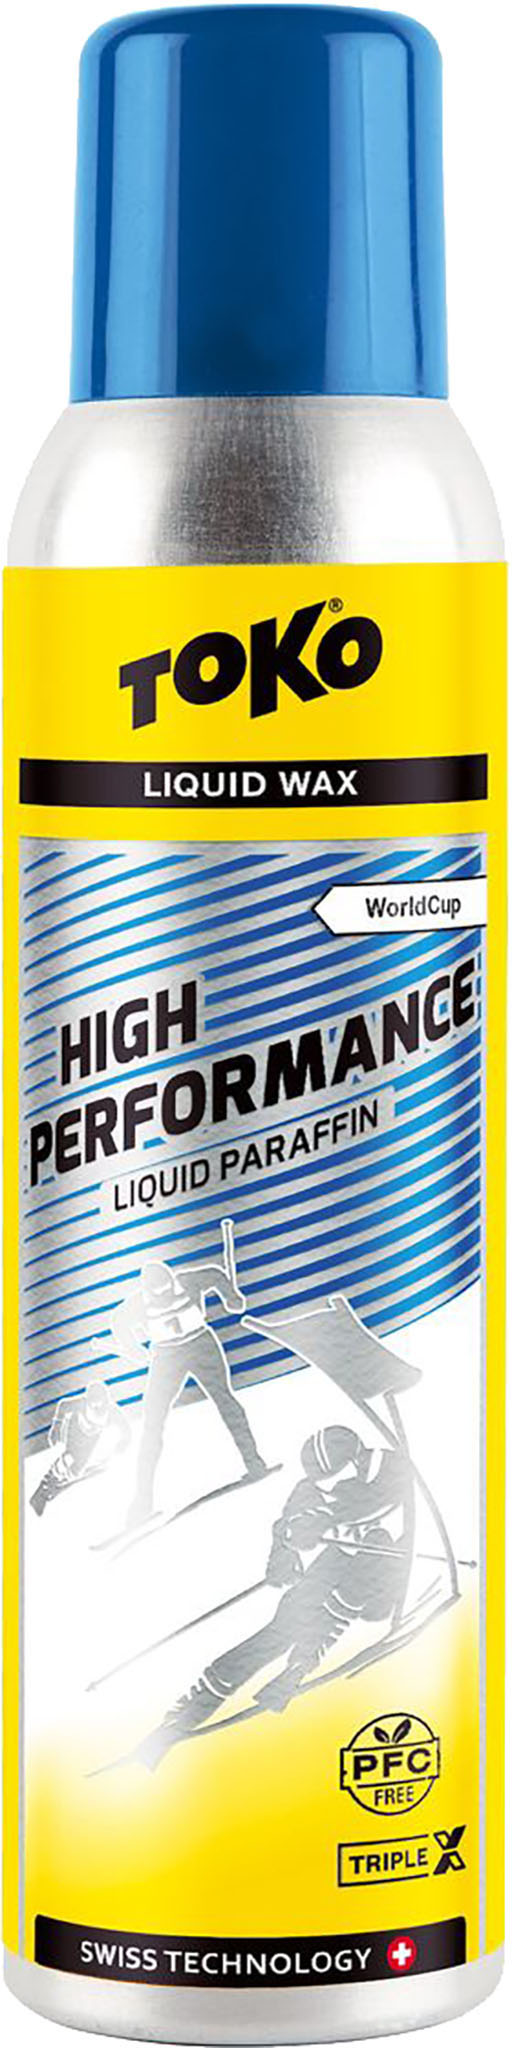 Toko High Performance Liquid Paraffin Blue 125Ml